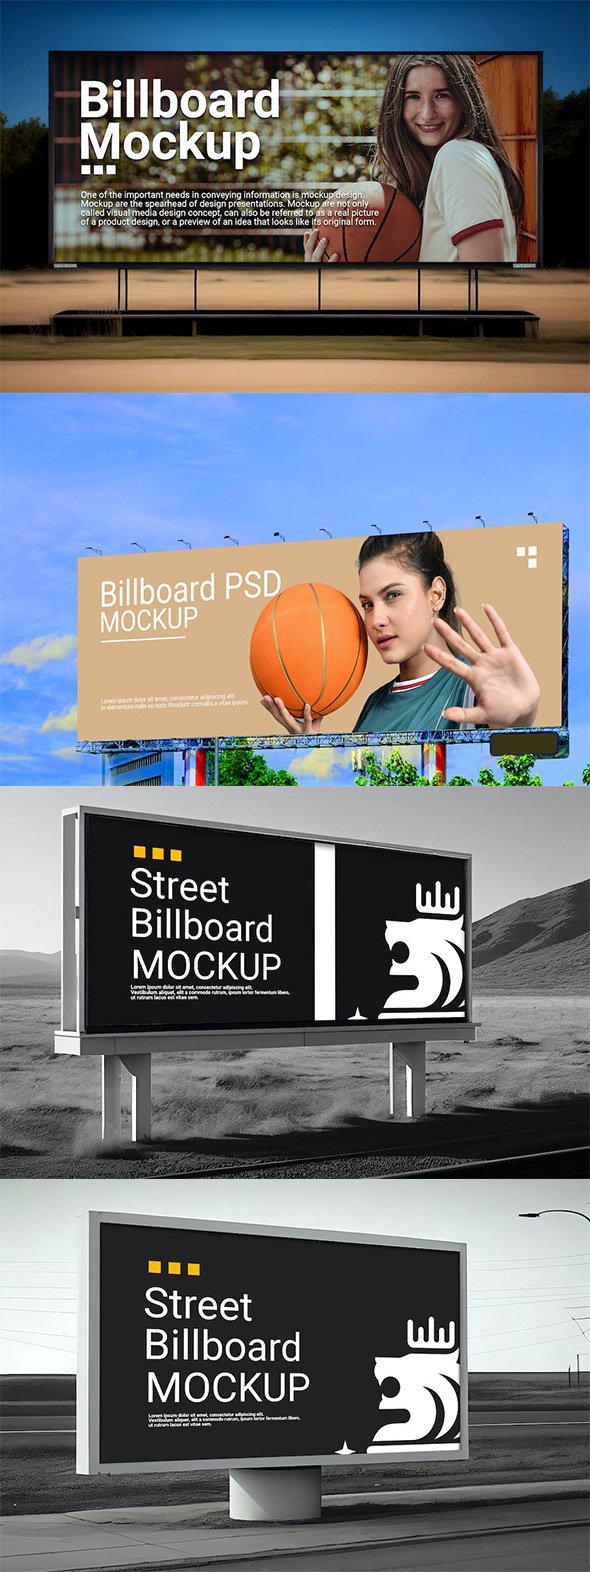 Billboard Mockups Vol 3